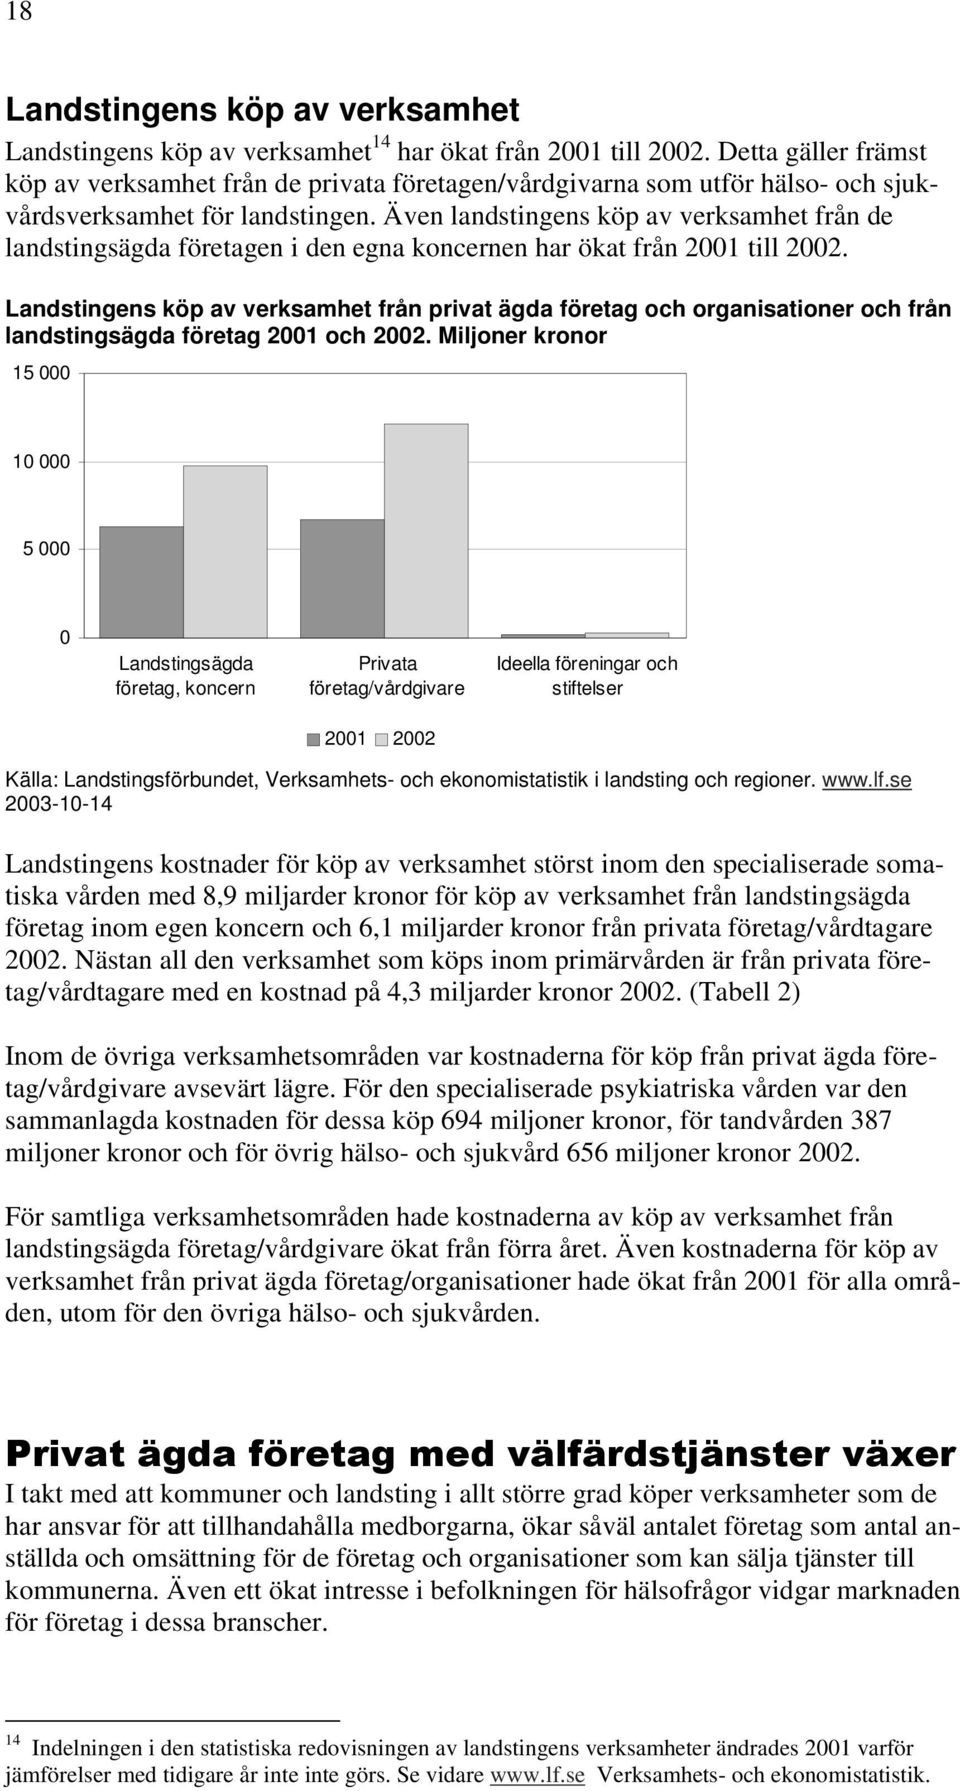 Även landstingens köp av verksamhet från de landstingsägda företagen i den egna koncernen har ökat från 2001 till 2002.